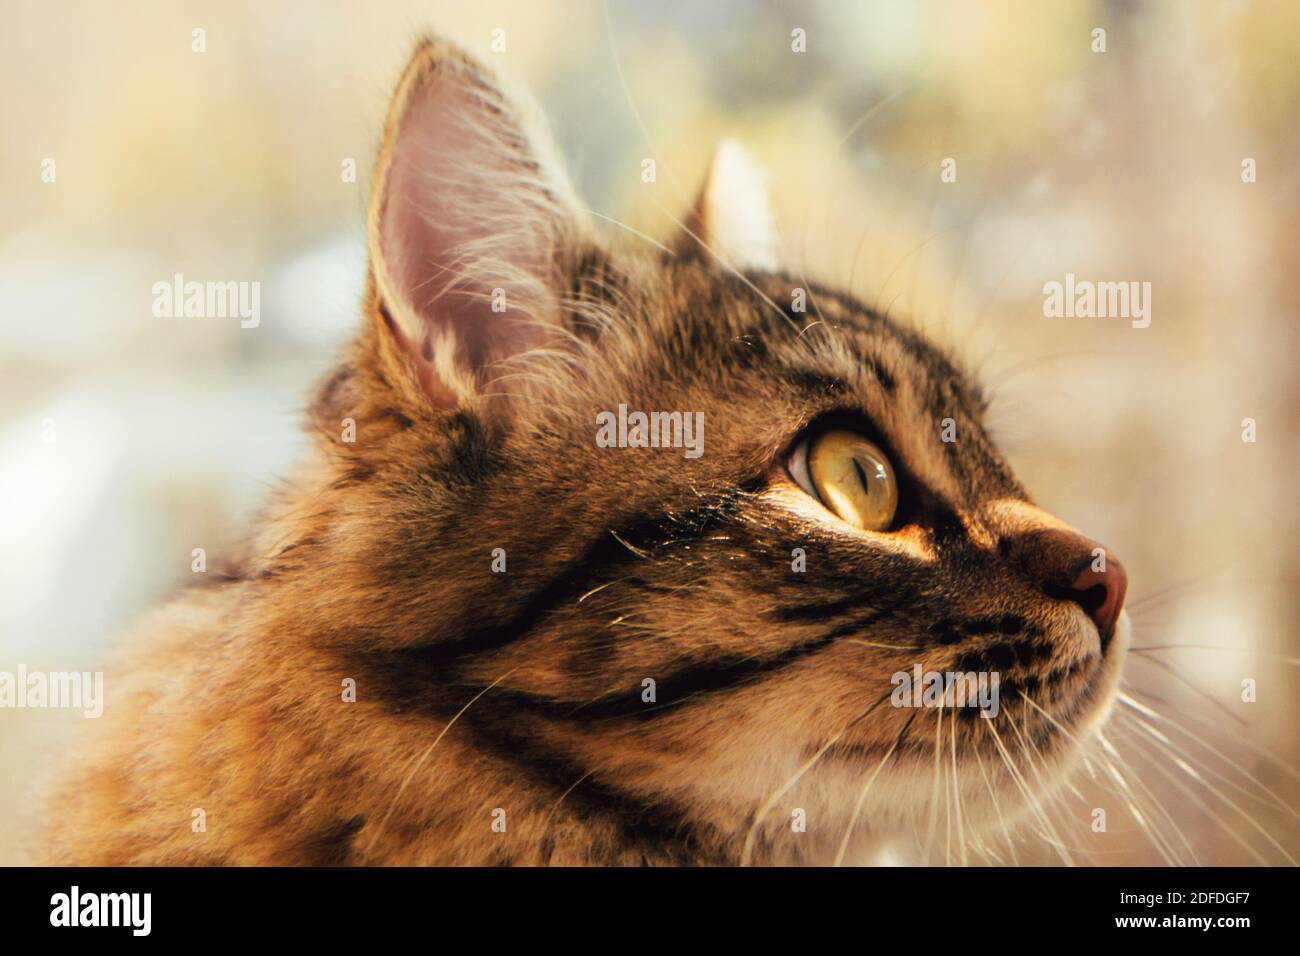 Joli chat gris moelleux près de la fenêtre. Animaux de compagnie, chats de race, protection de la nature. Arrière-plan flou en dehors de la fenêtre. Gros plan sur le museau de chat Banque D'Images